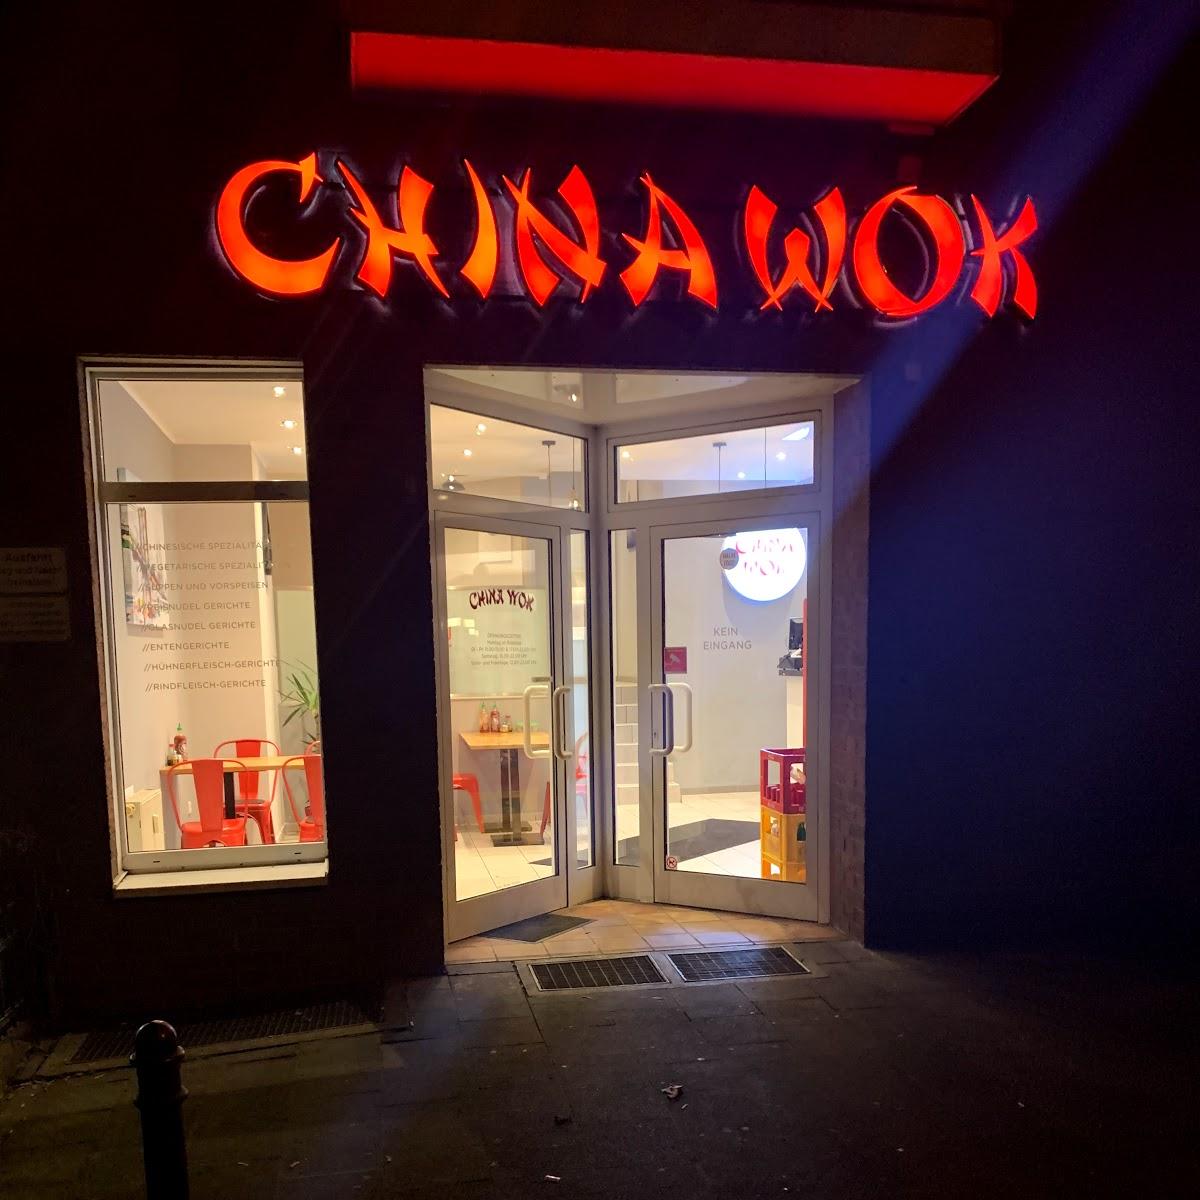 Restaurant "China Wok" in Köln